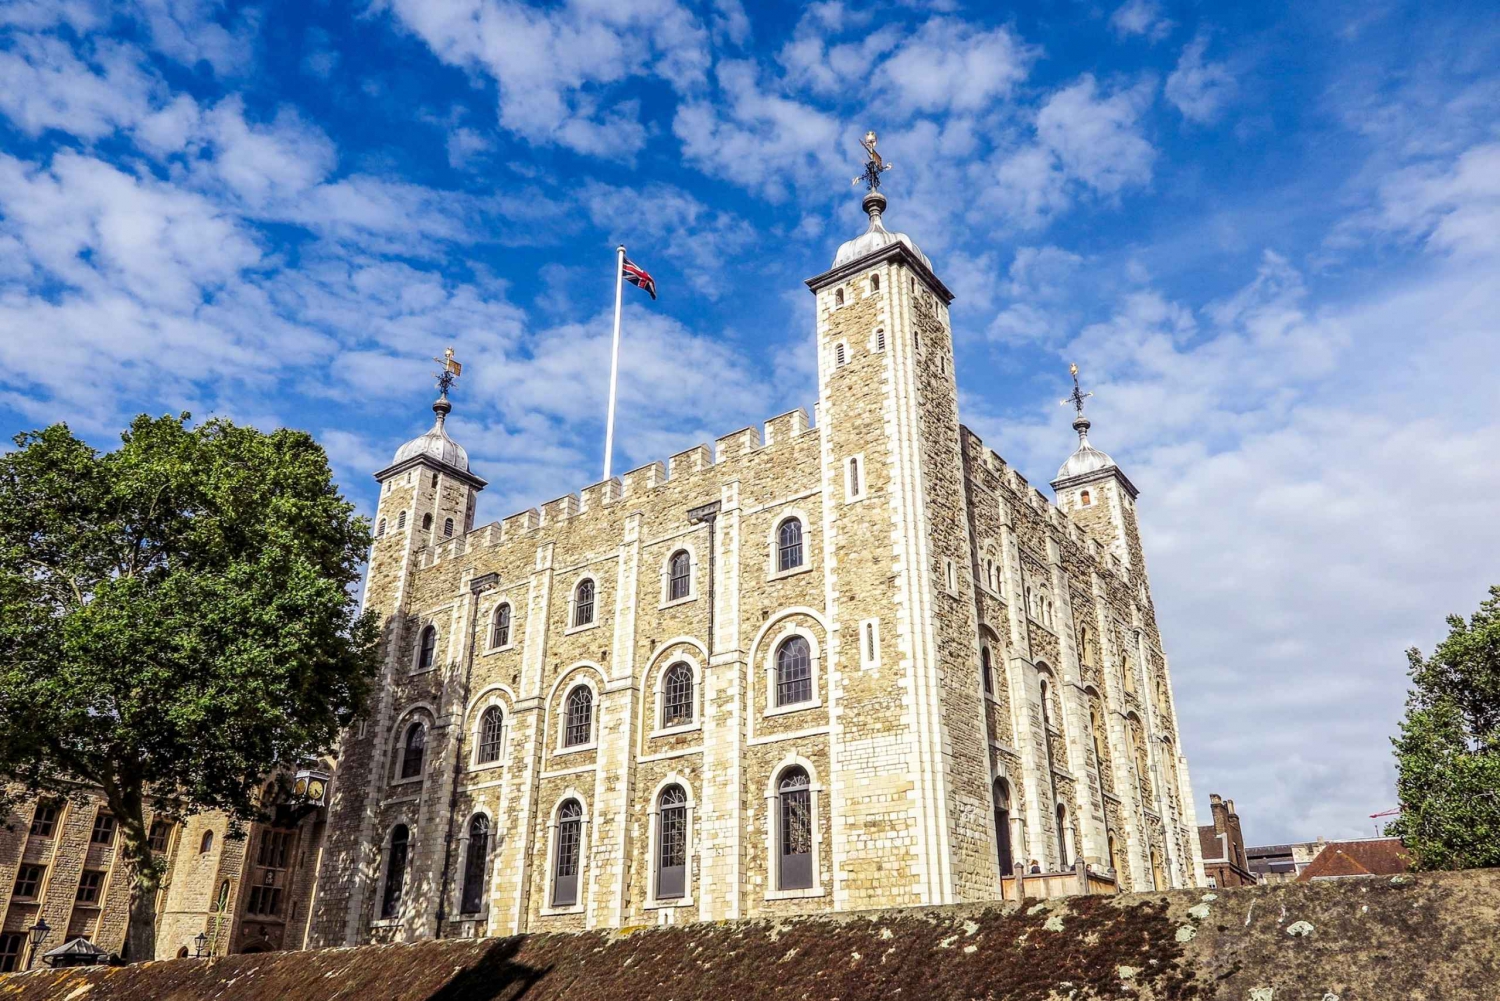 Londyn: Tower of London i Tower Bridge z wczesnym dostępem